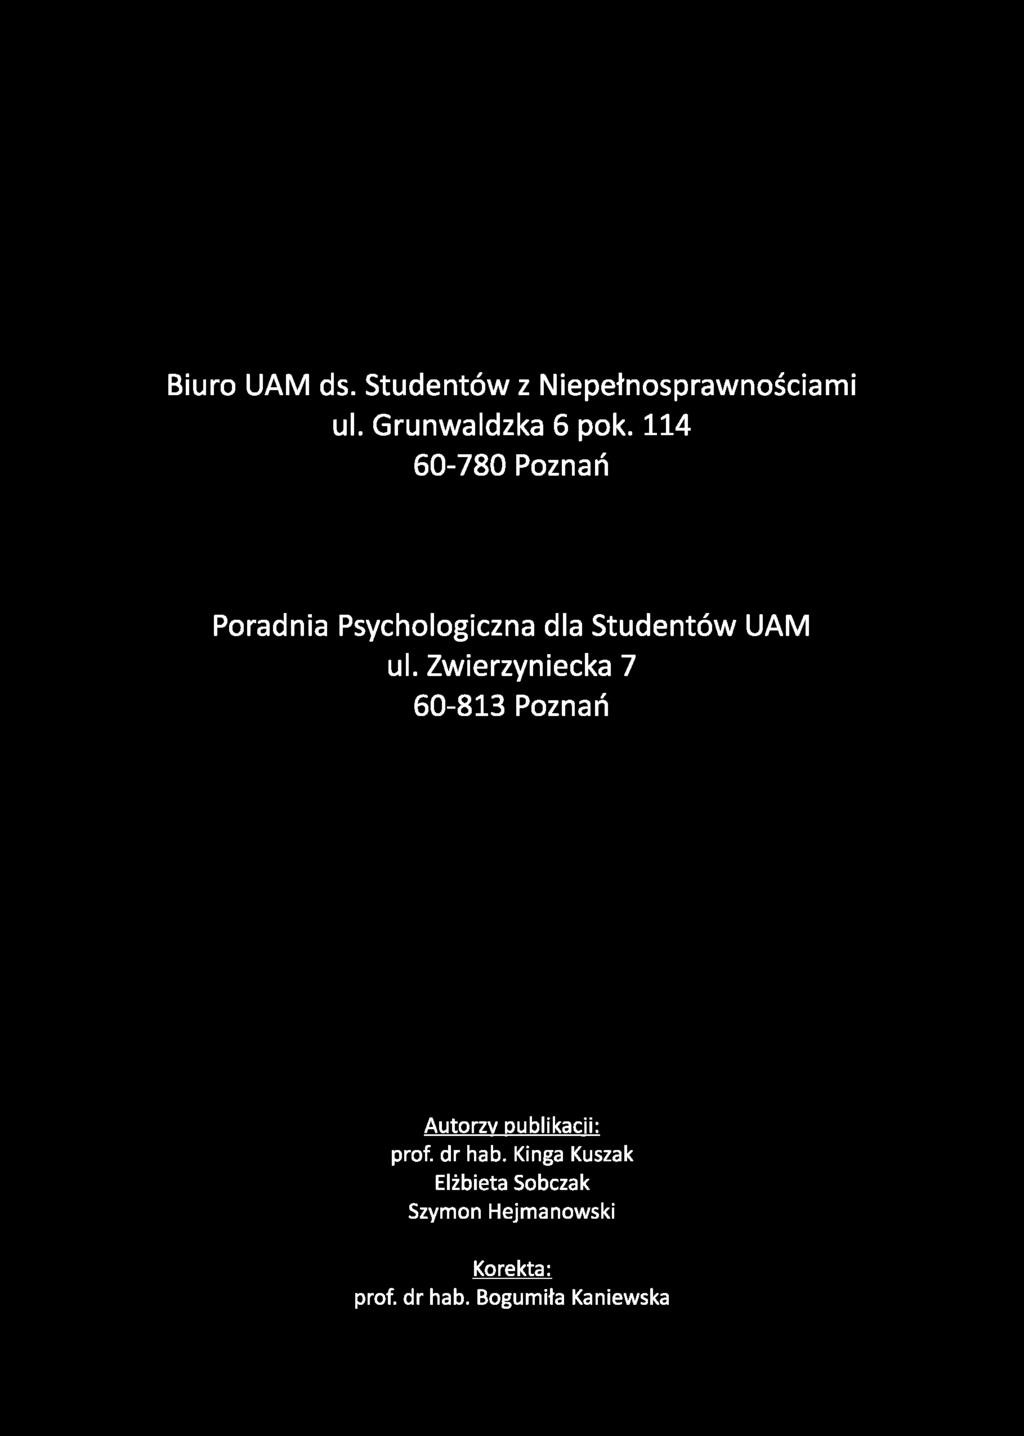 Biuro UAM ds. Studentów z Niepełnosprawnościami ul. Grunwaldzka 6 pok. 114 60-780 Poznań Poradnia Psychologiczna dla Studentów UAM ul.